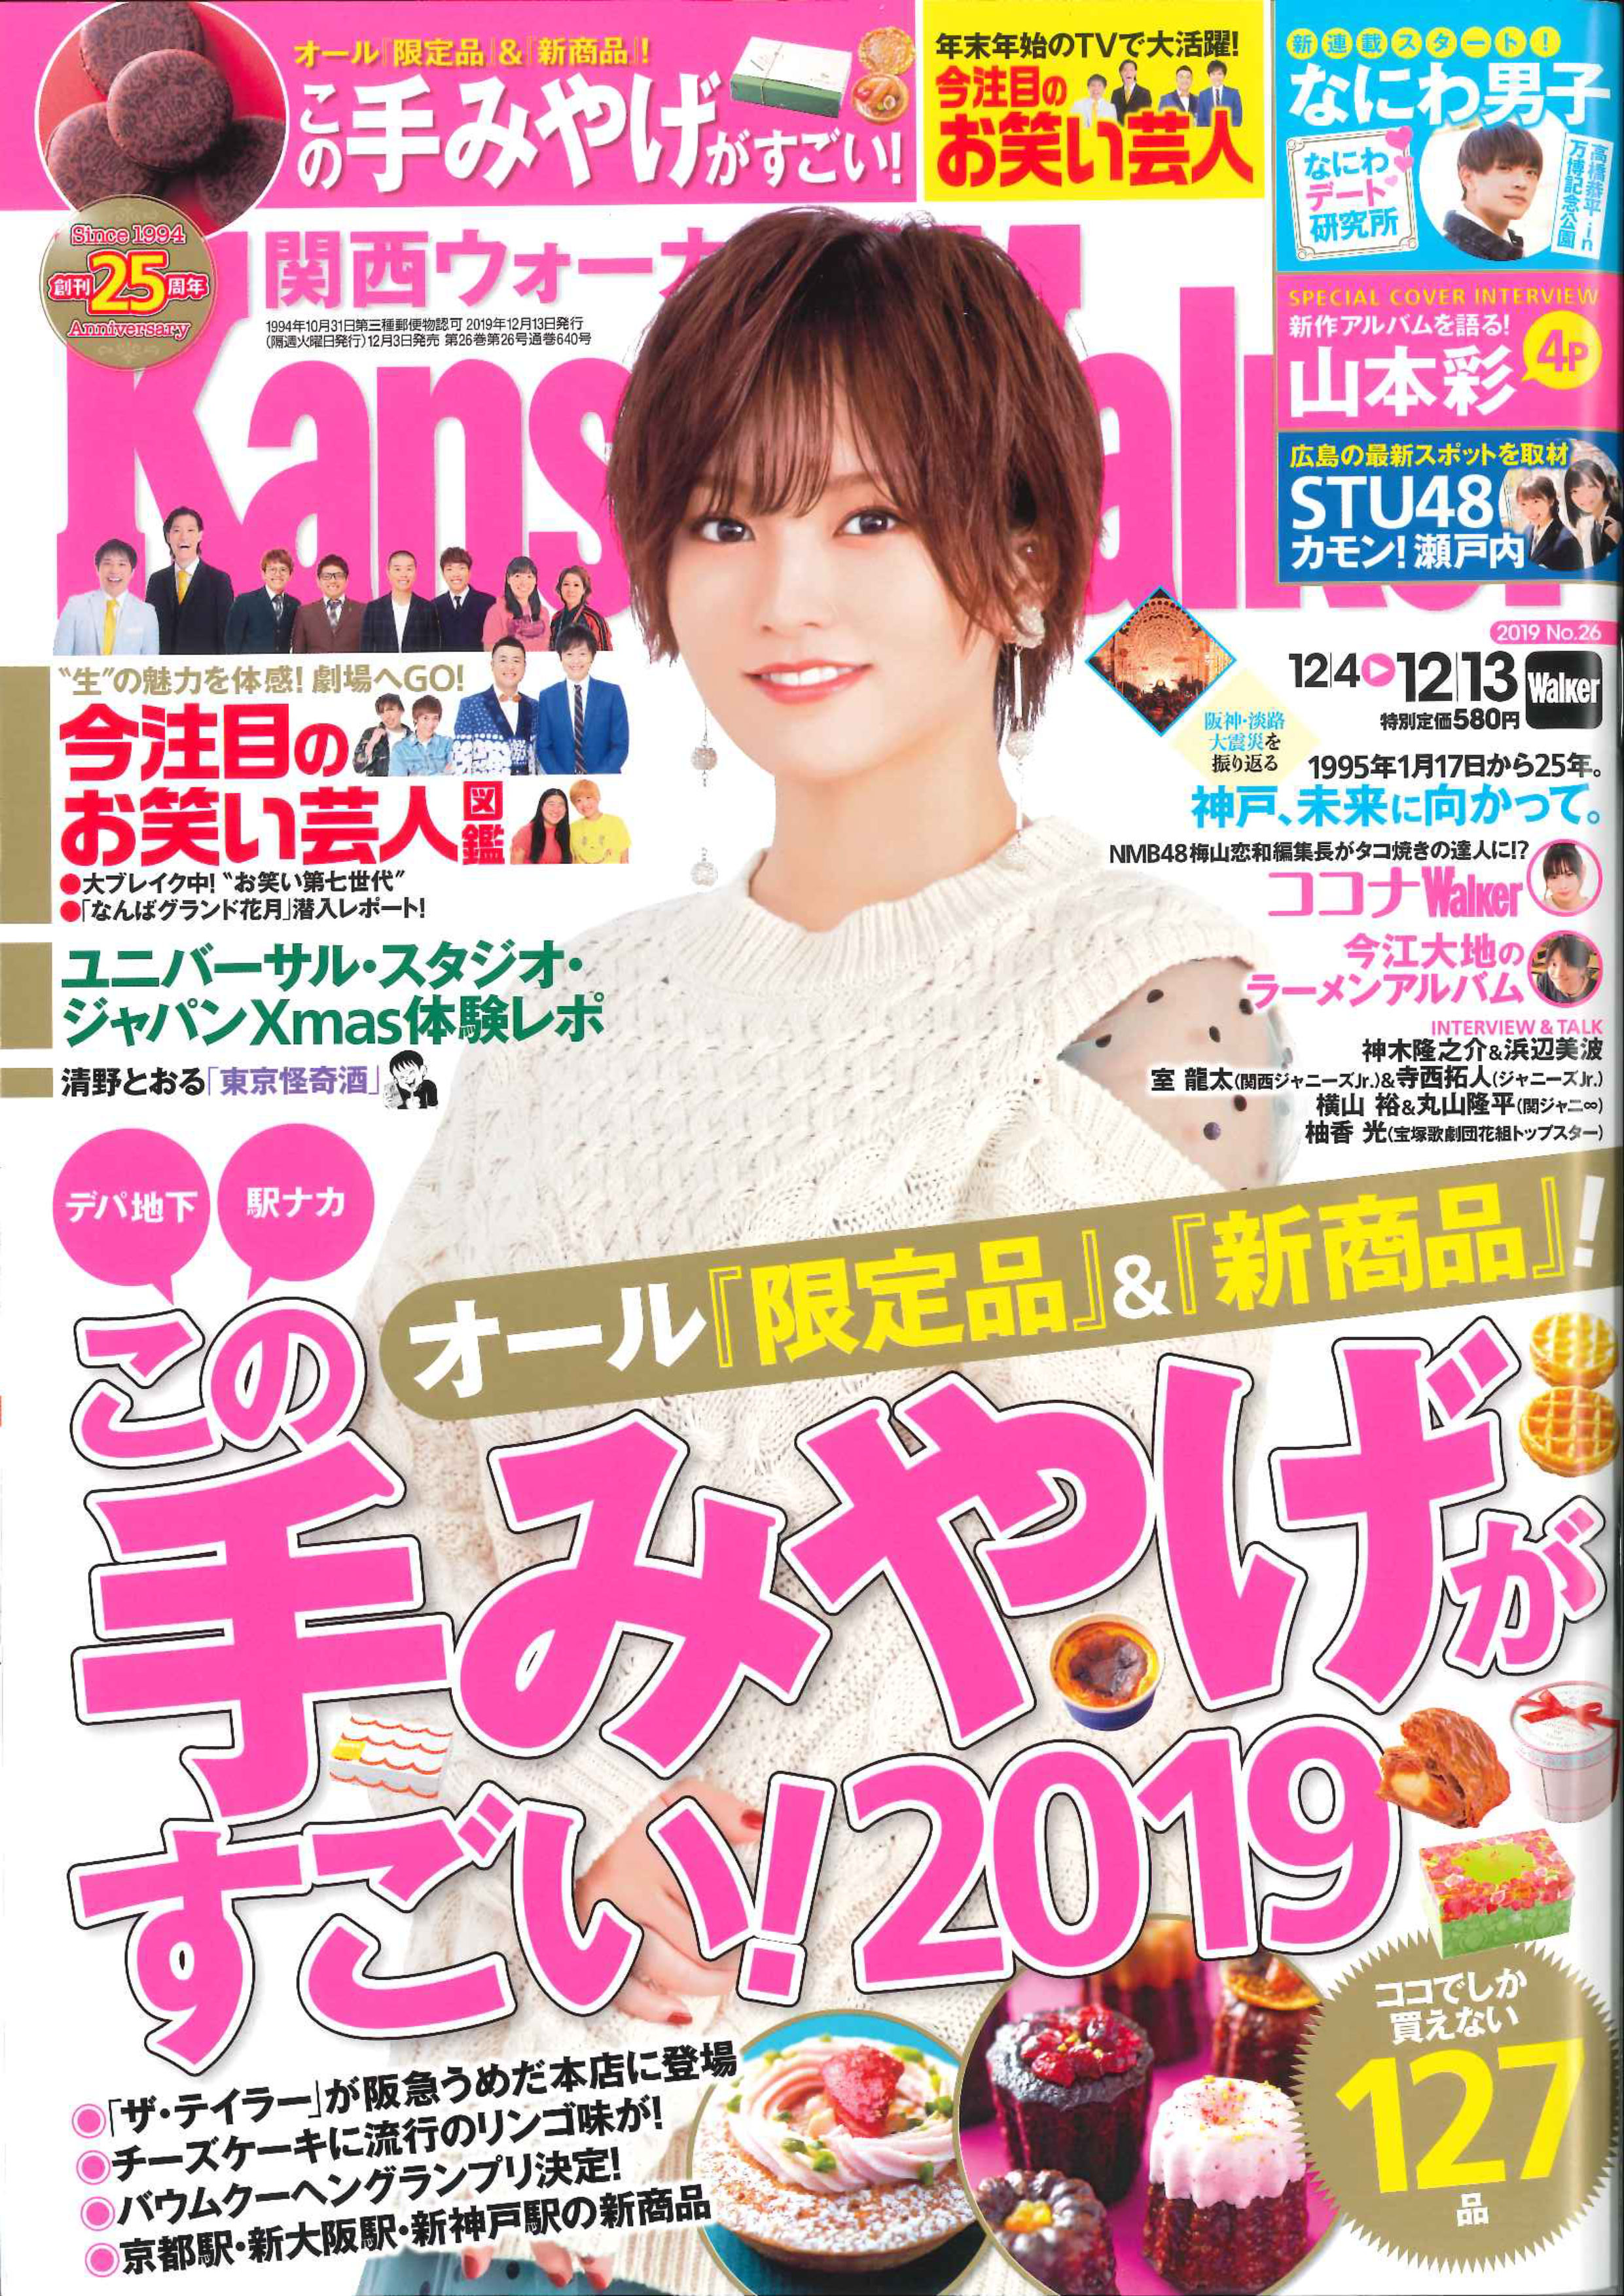 雑誌「関西ウォーカー26号」にて大阪花ラングが紹介されました。